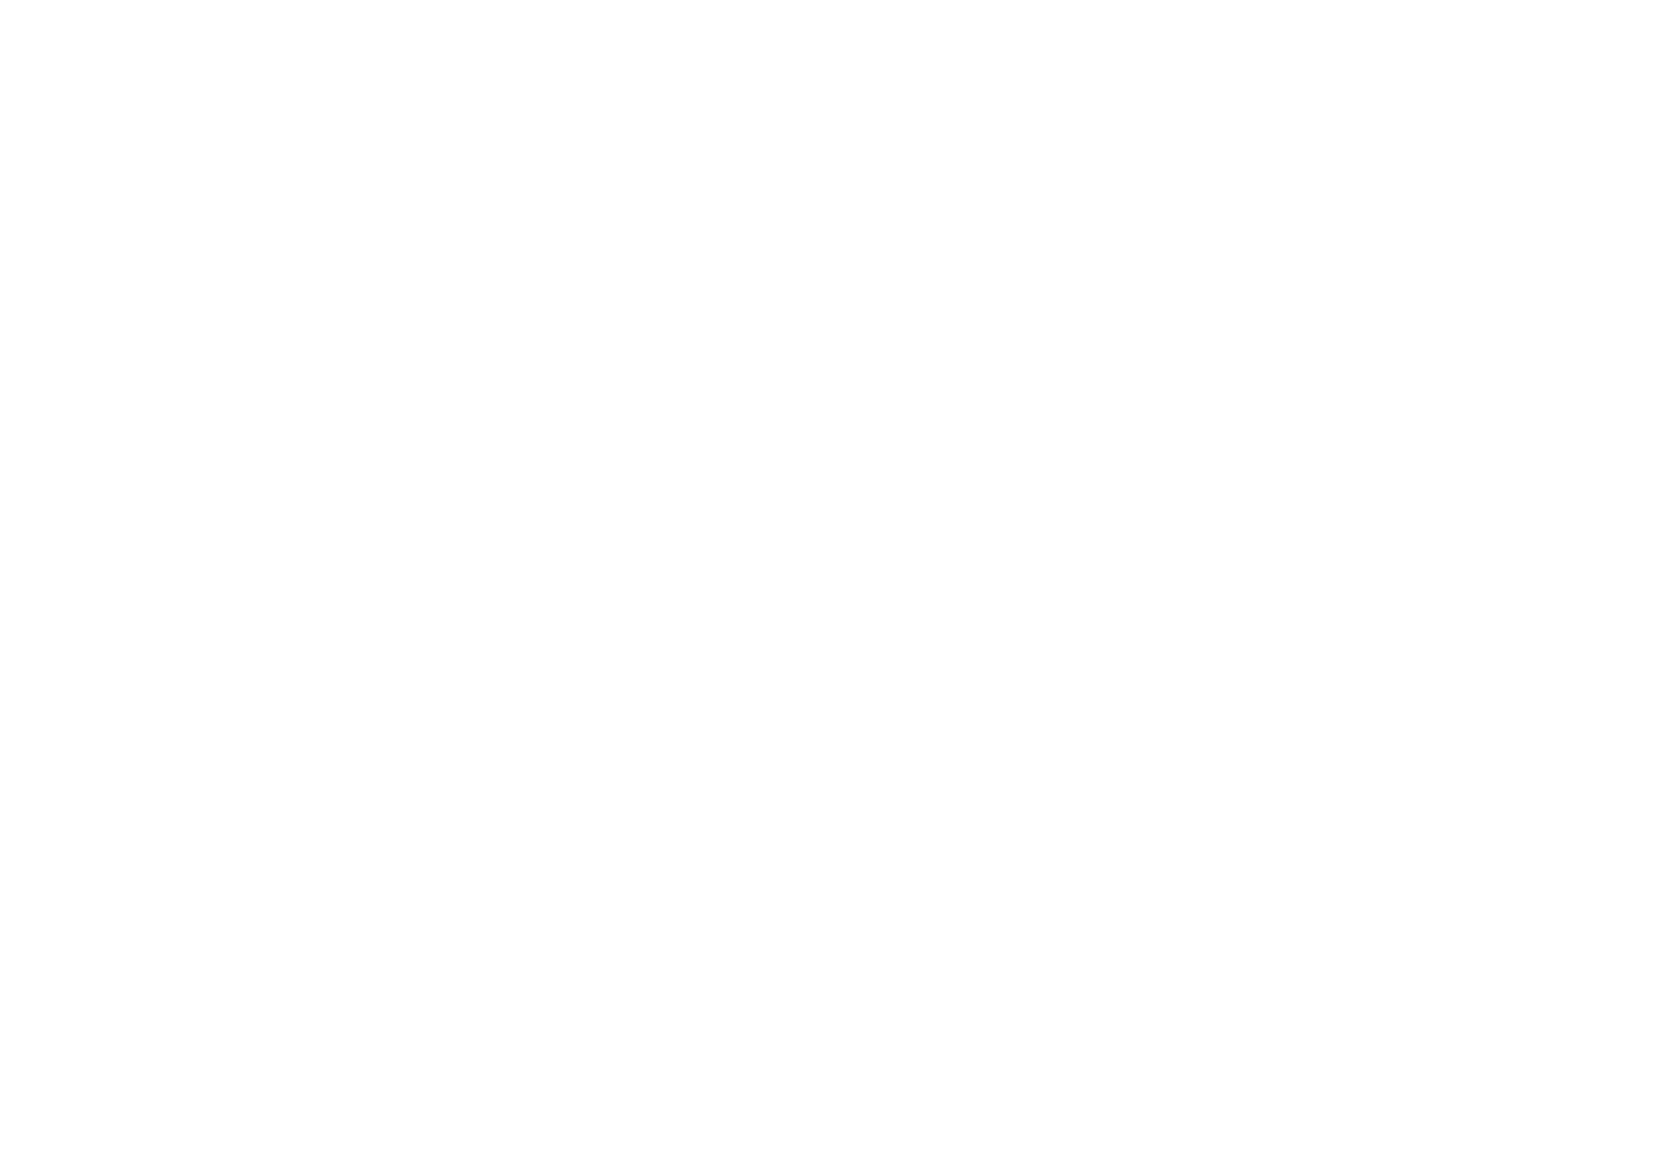 <h1>Guitar Center Repairs</h1>